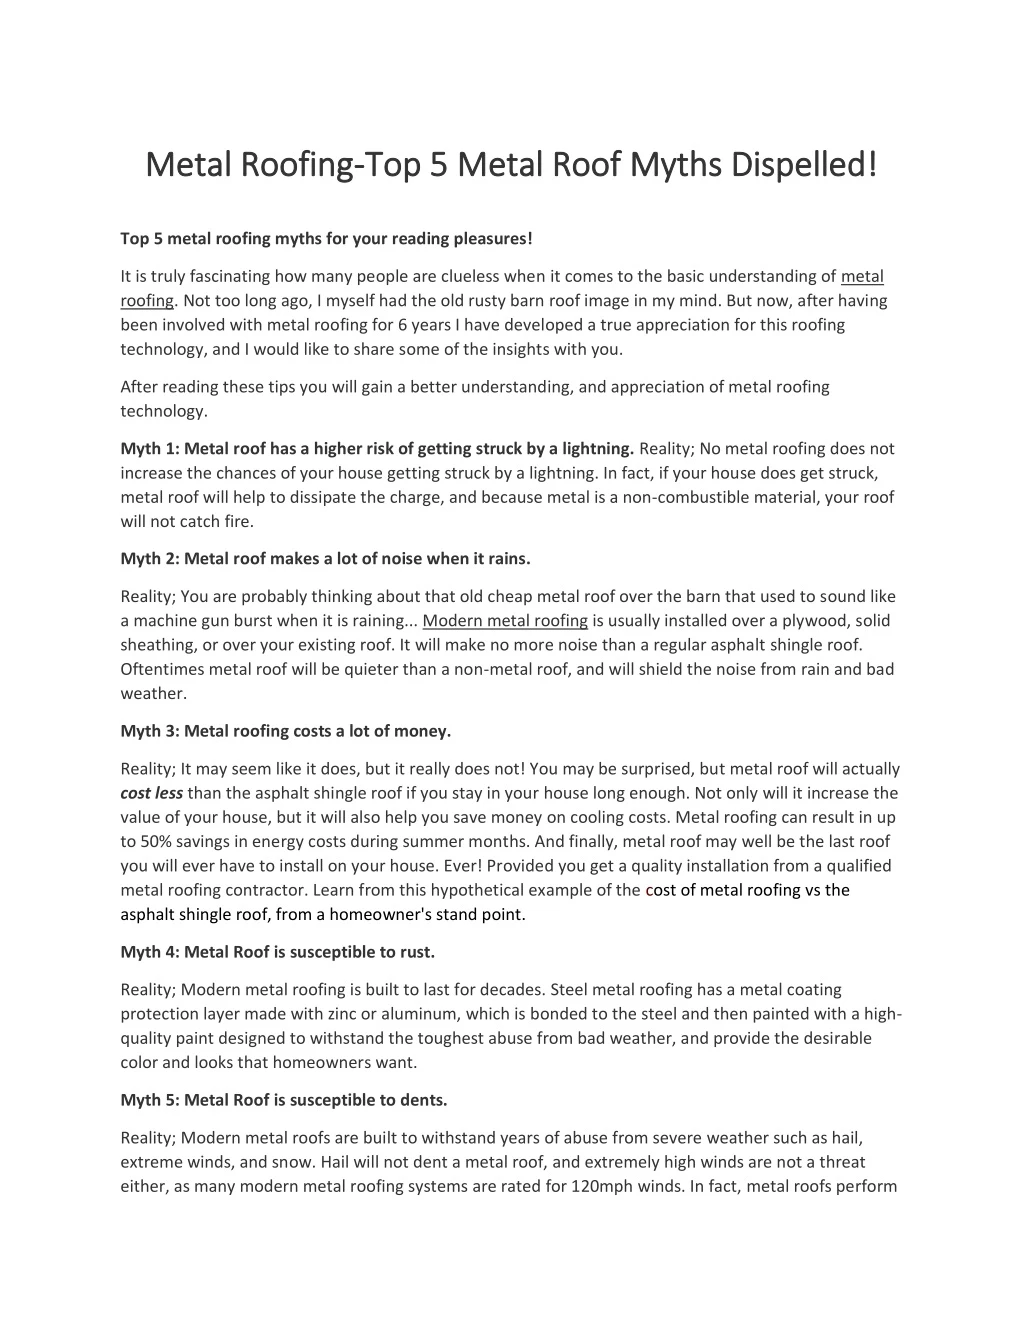 metal roofing metal roofing top 5 metal roof